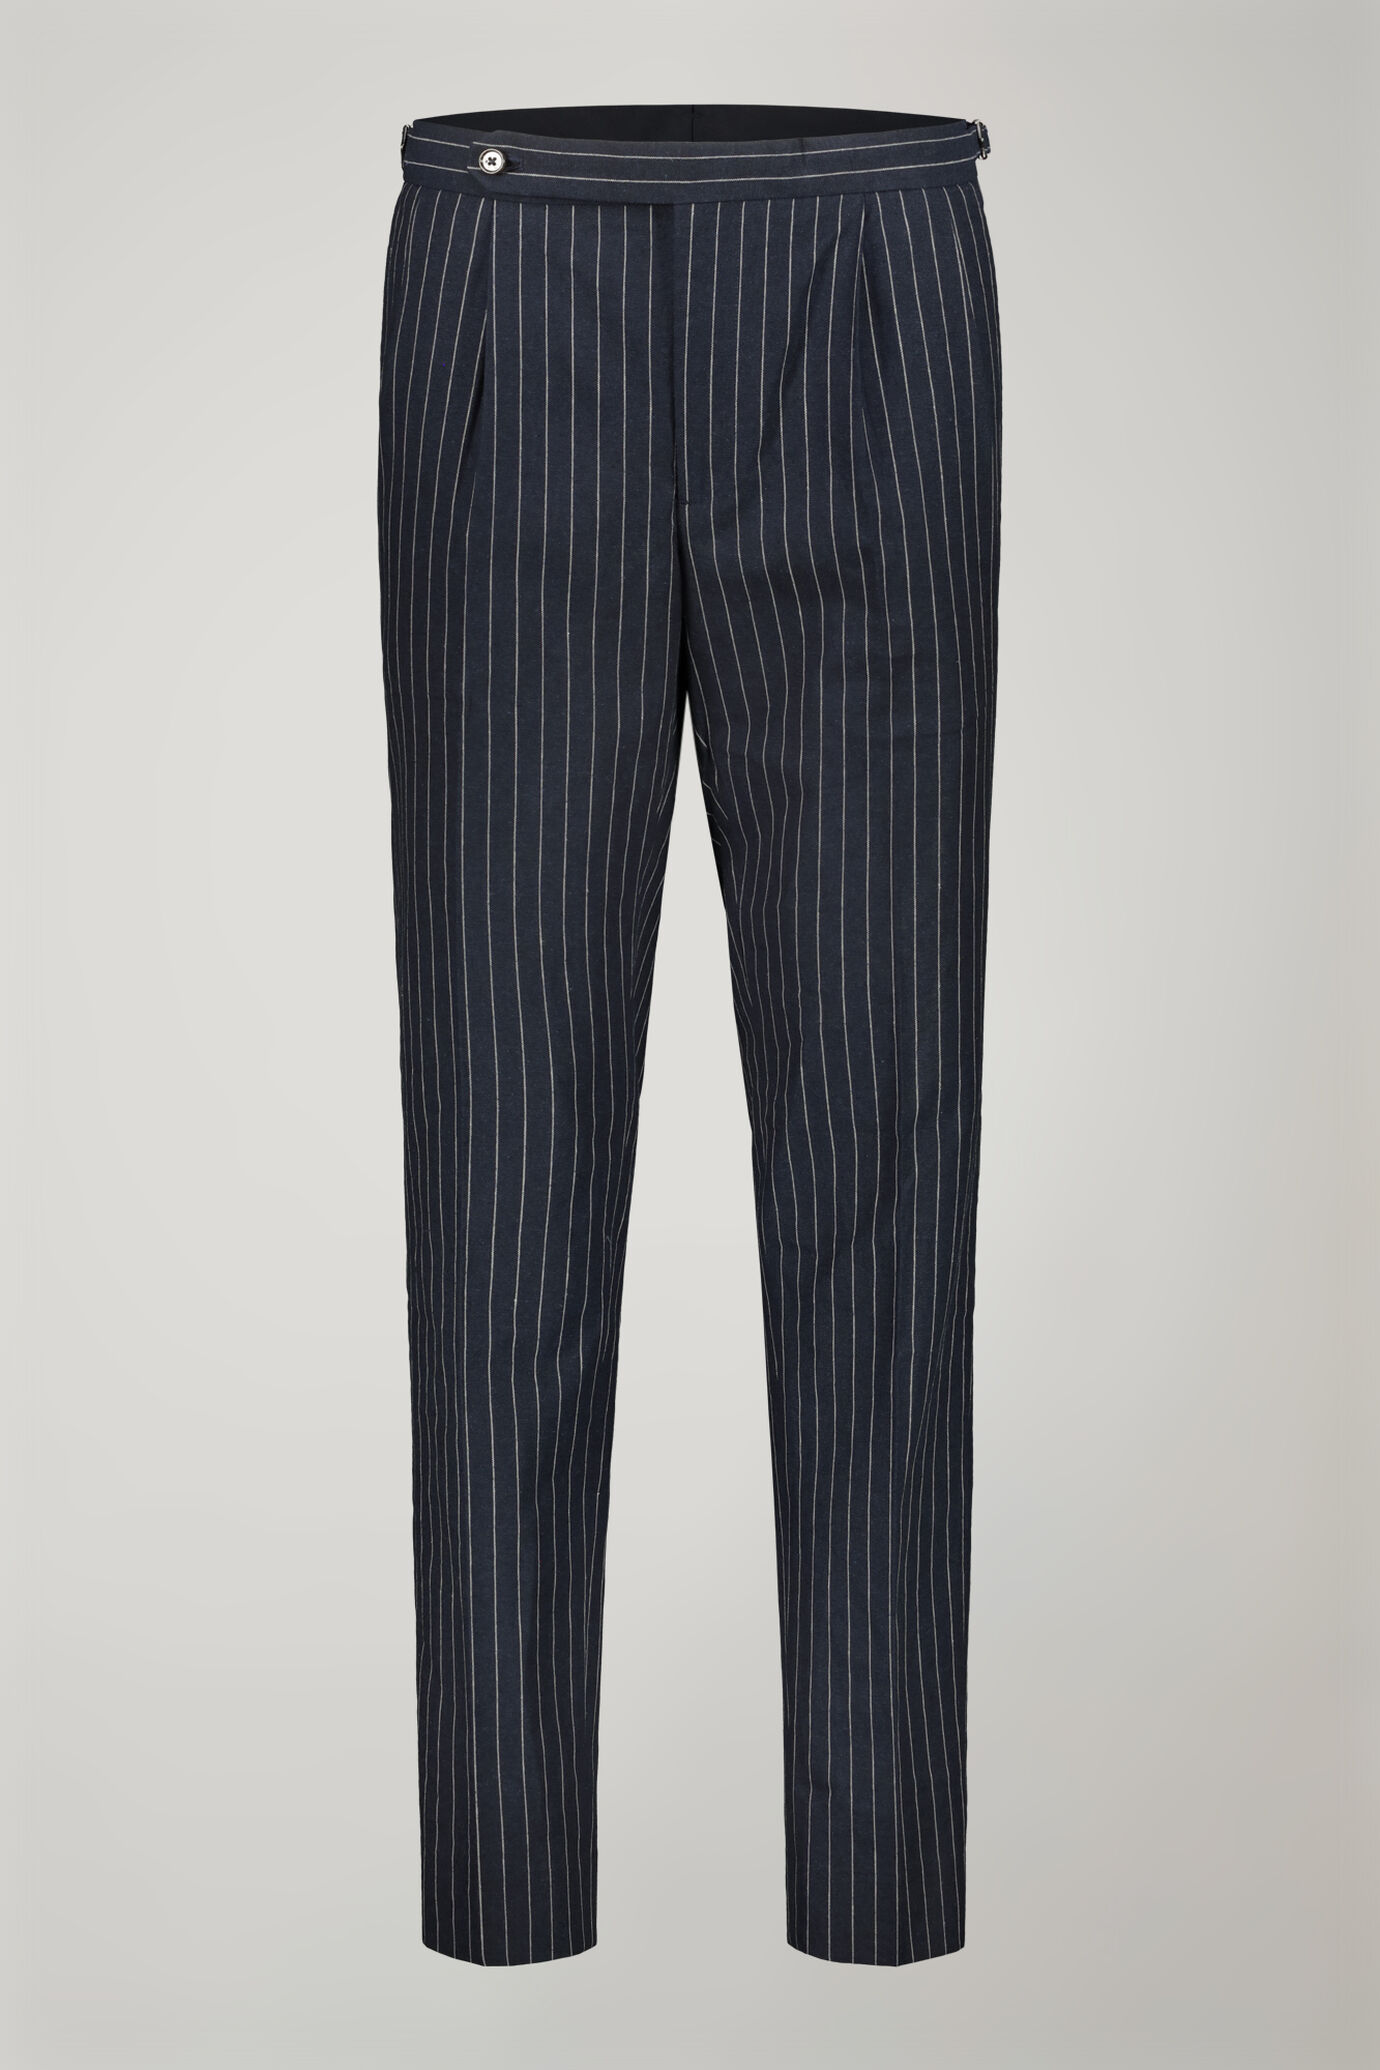 Pantalone classico uomo con doppia pince tessuto lino e cotone con disegno gessato regular fit image number 5